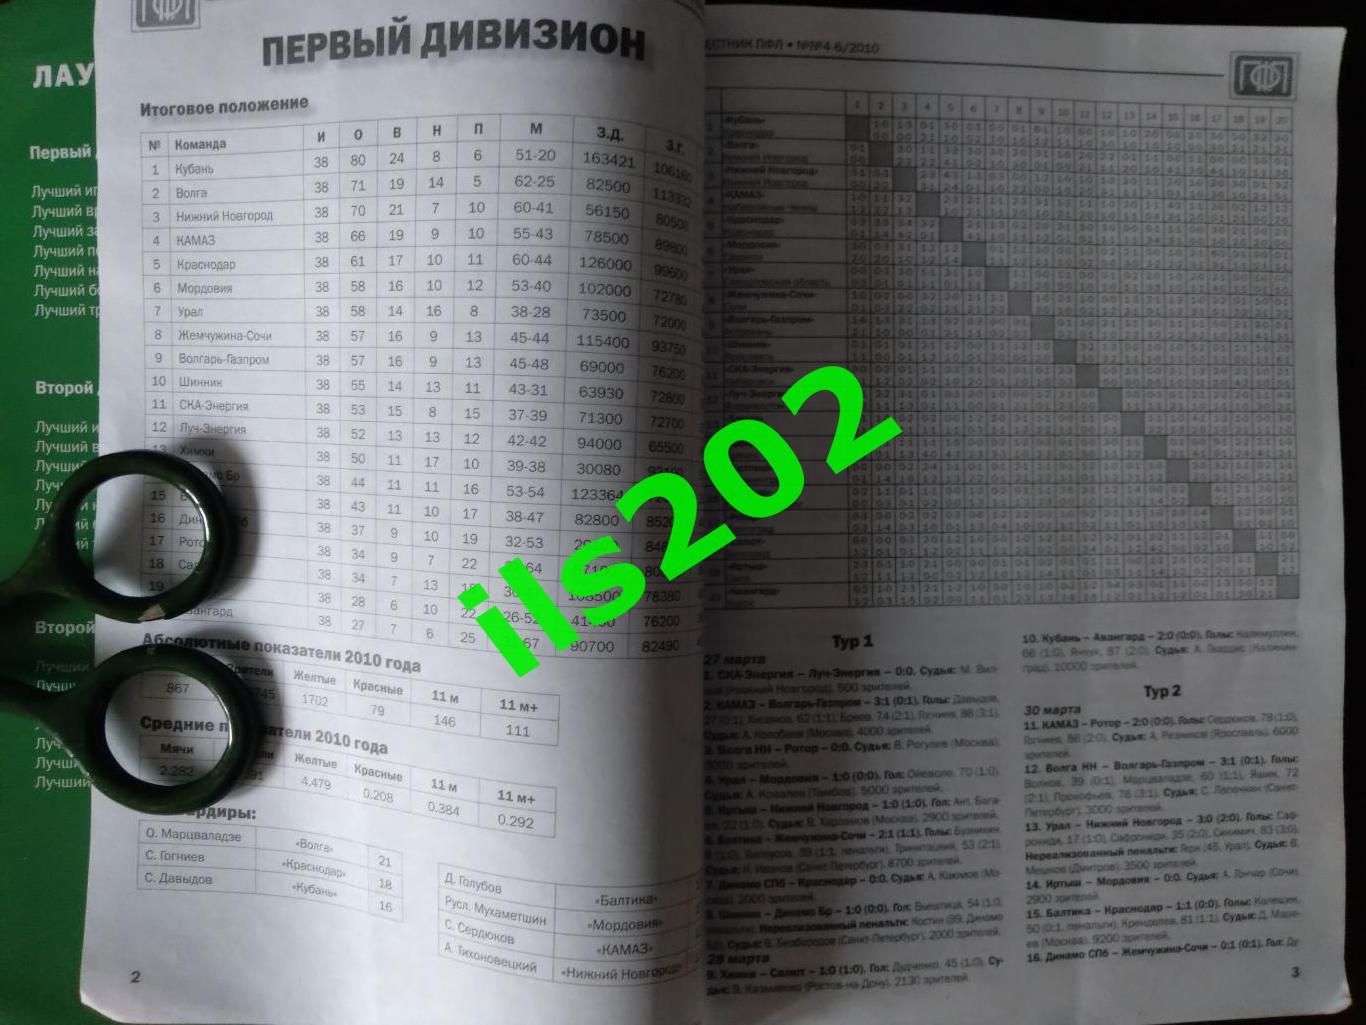 Вестник ПФЛ №4-6 / 2010 первый и второй дивизион ИТОГИ информационный справочник 2